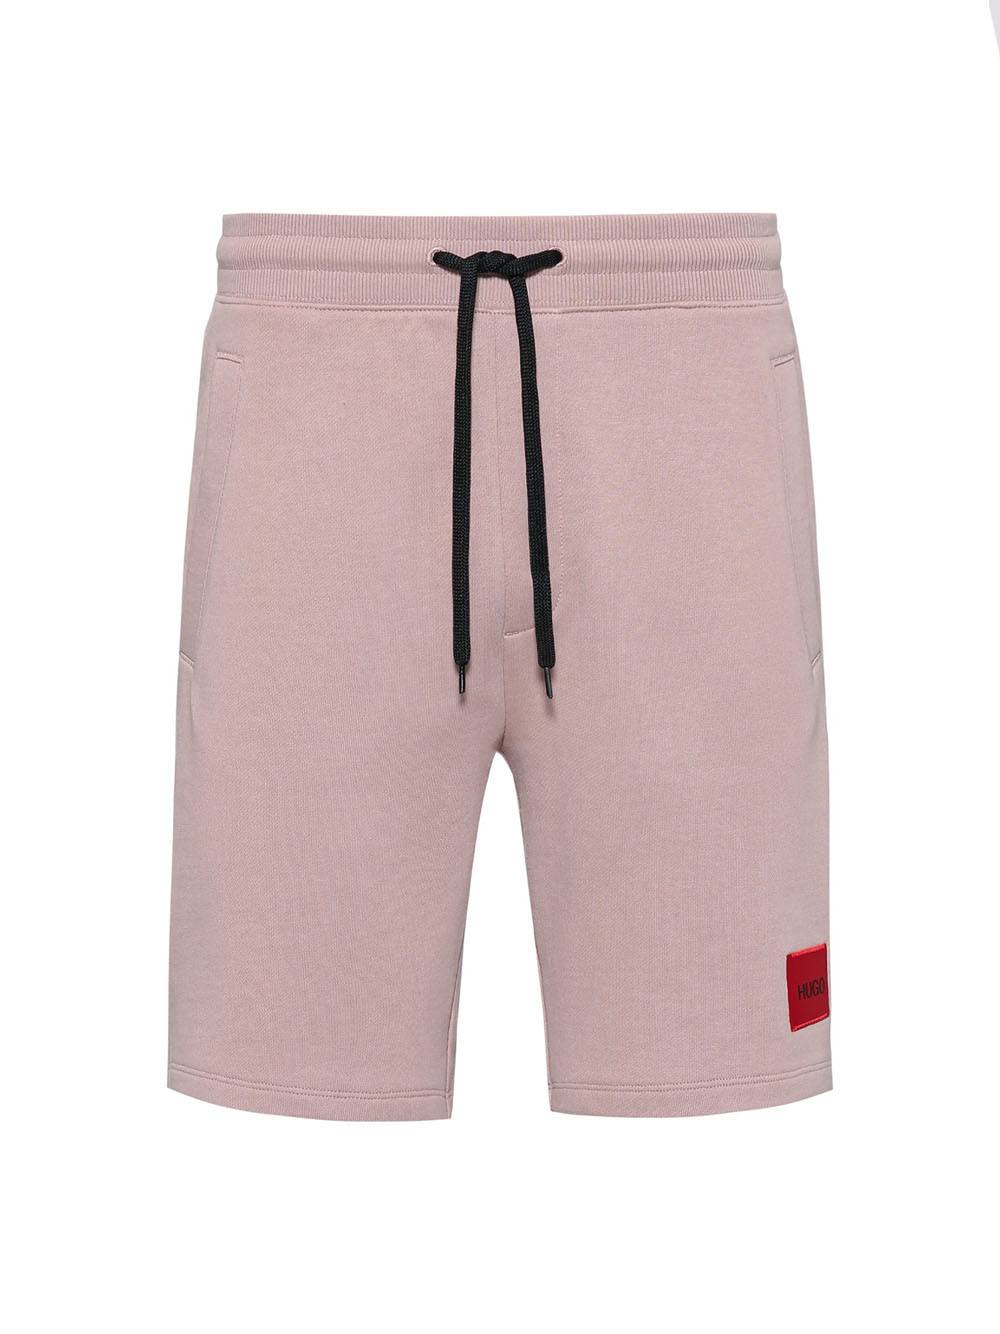 HUGO Logo Shorts Light Pink - MAISONDEFASHION.COM